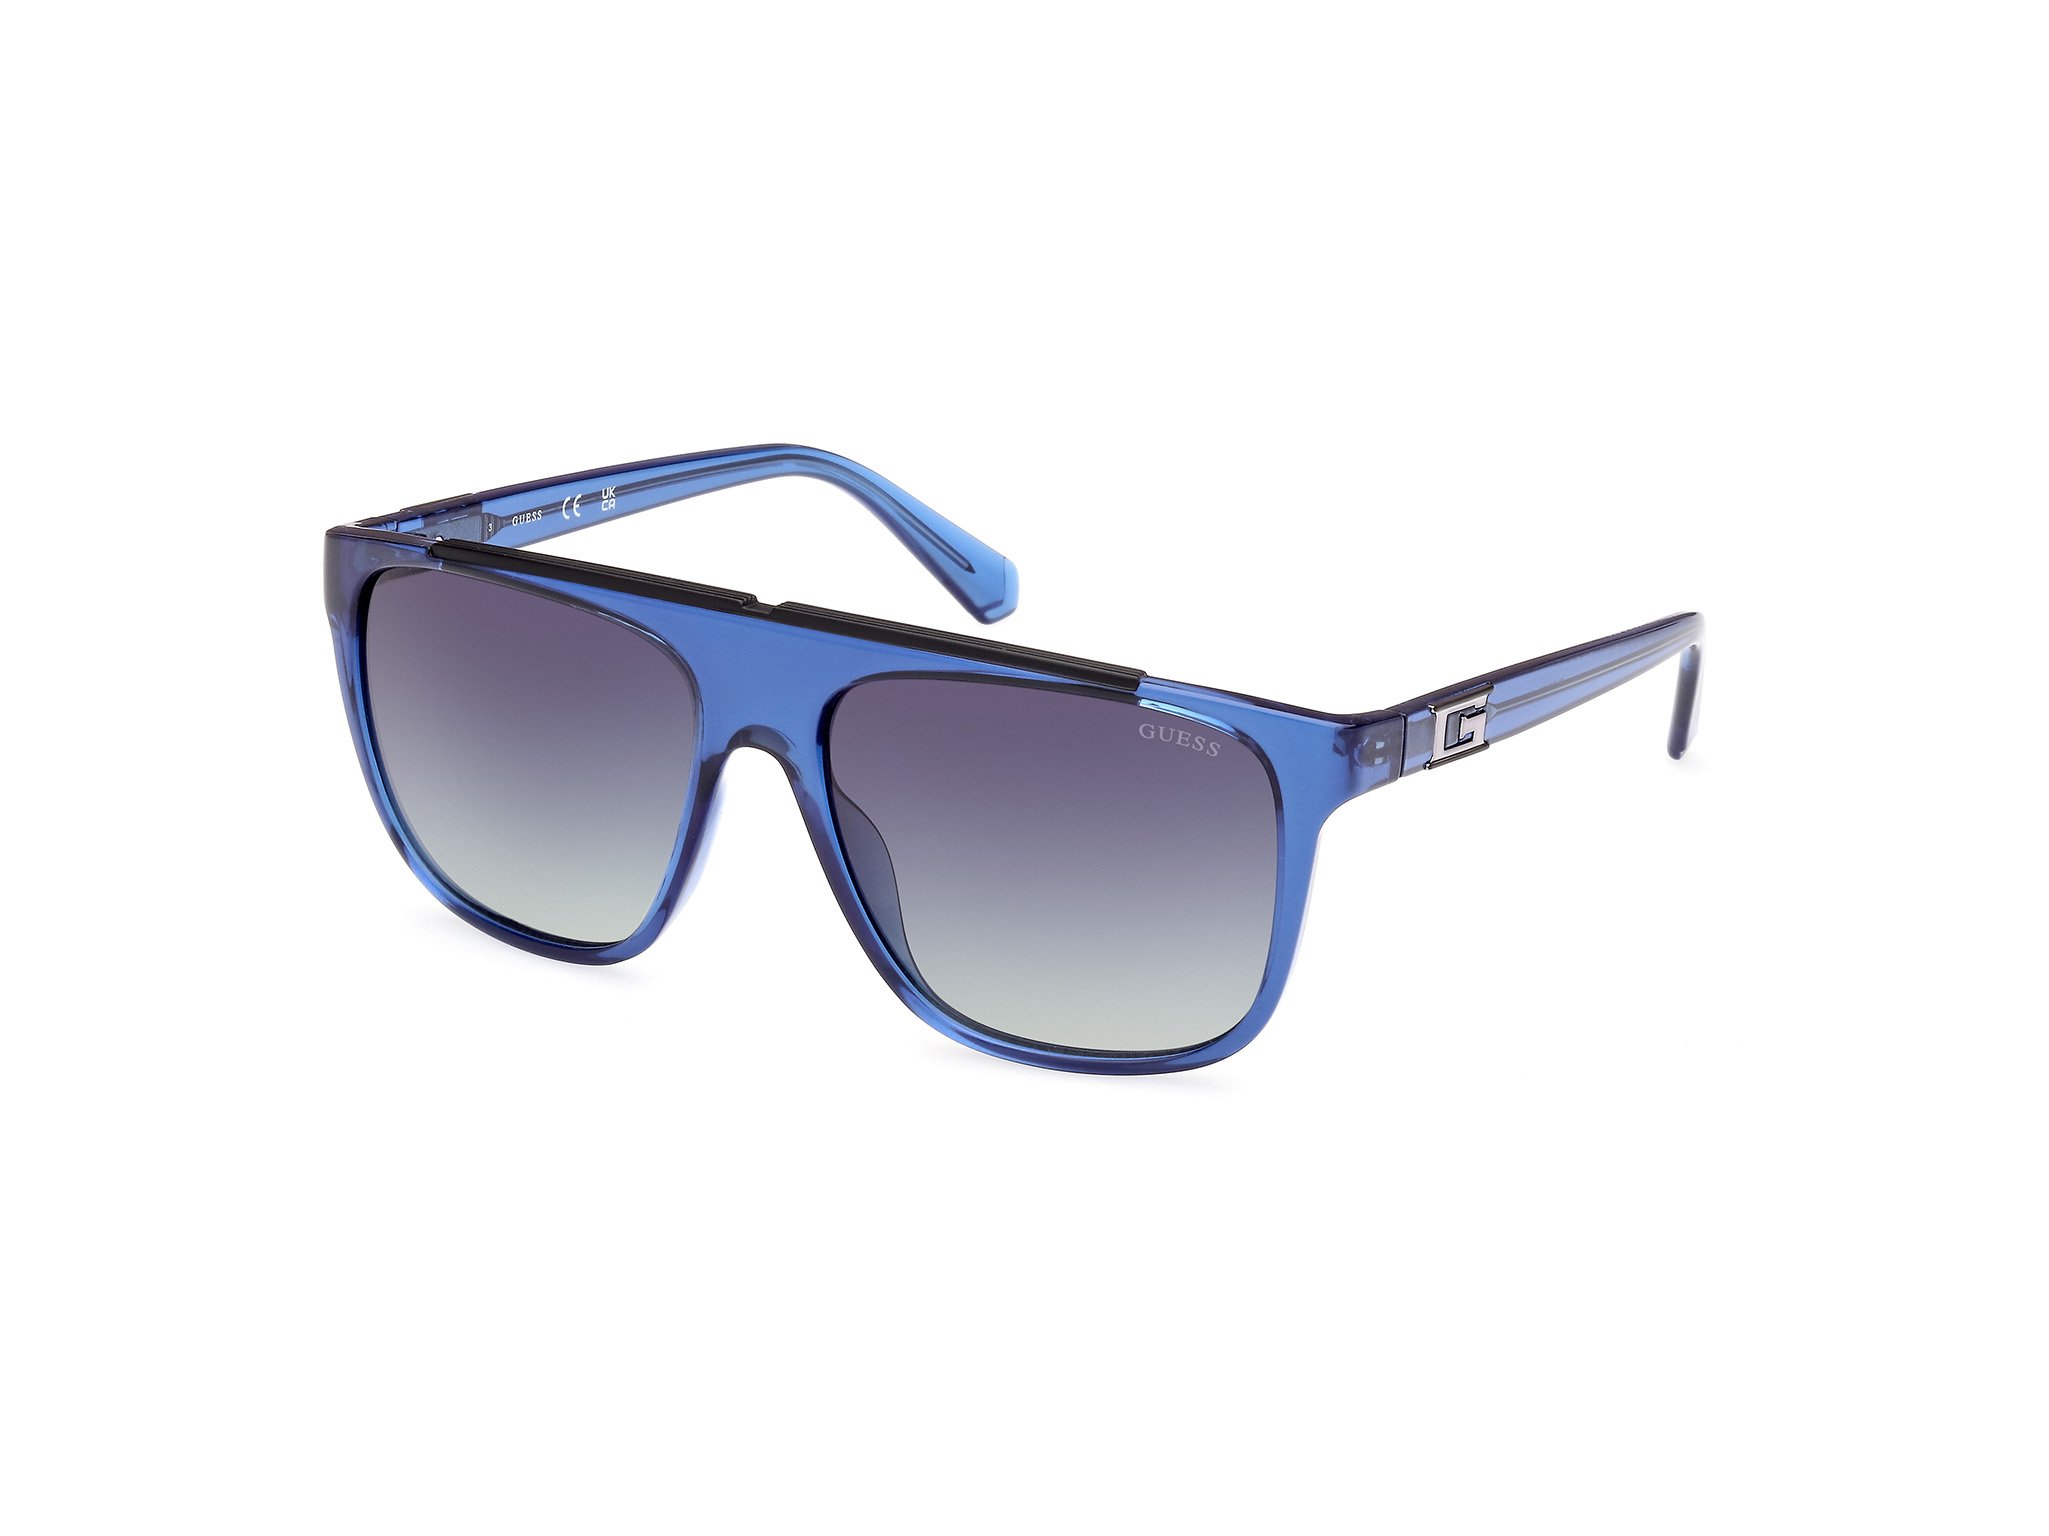 Das Bild zeigt die Sonnenbrille GU00123 90W von der Marke Guess in Blau.